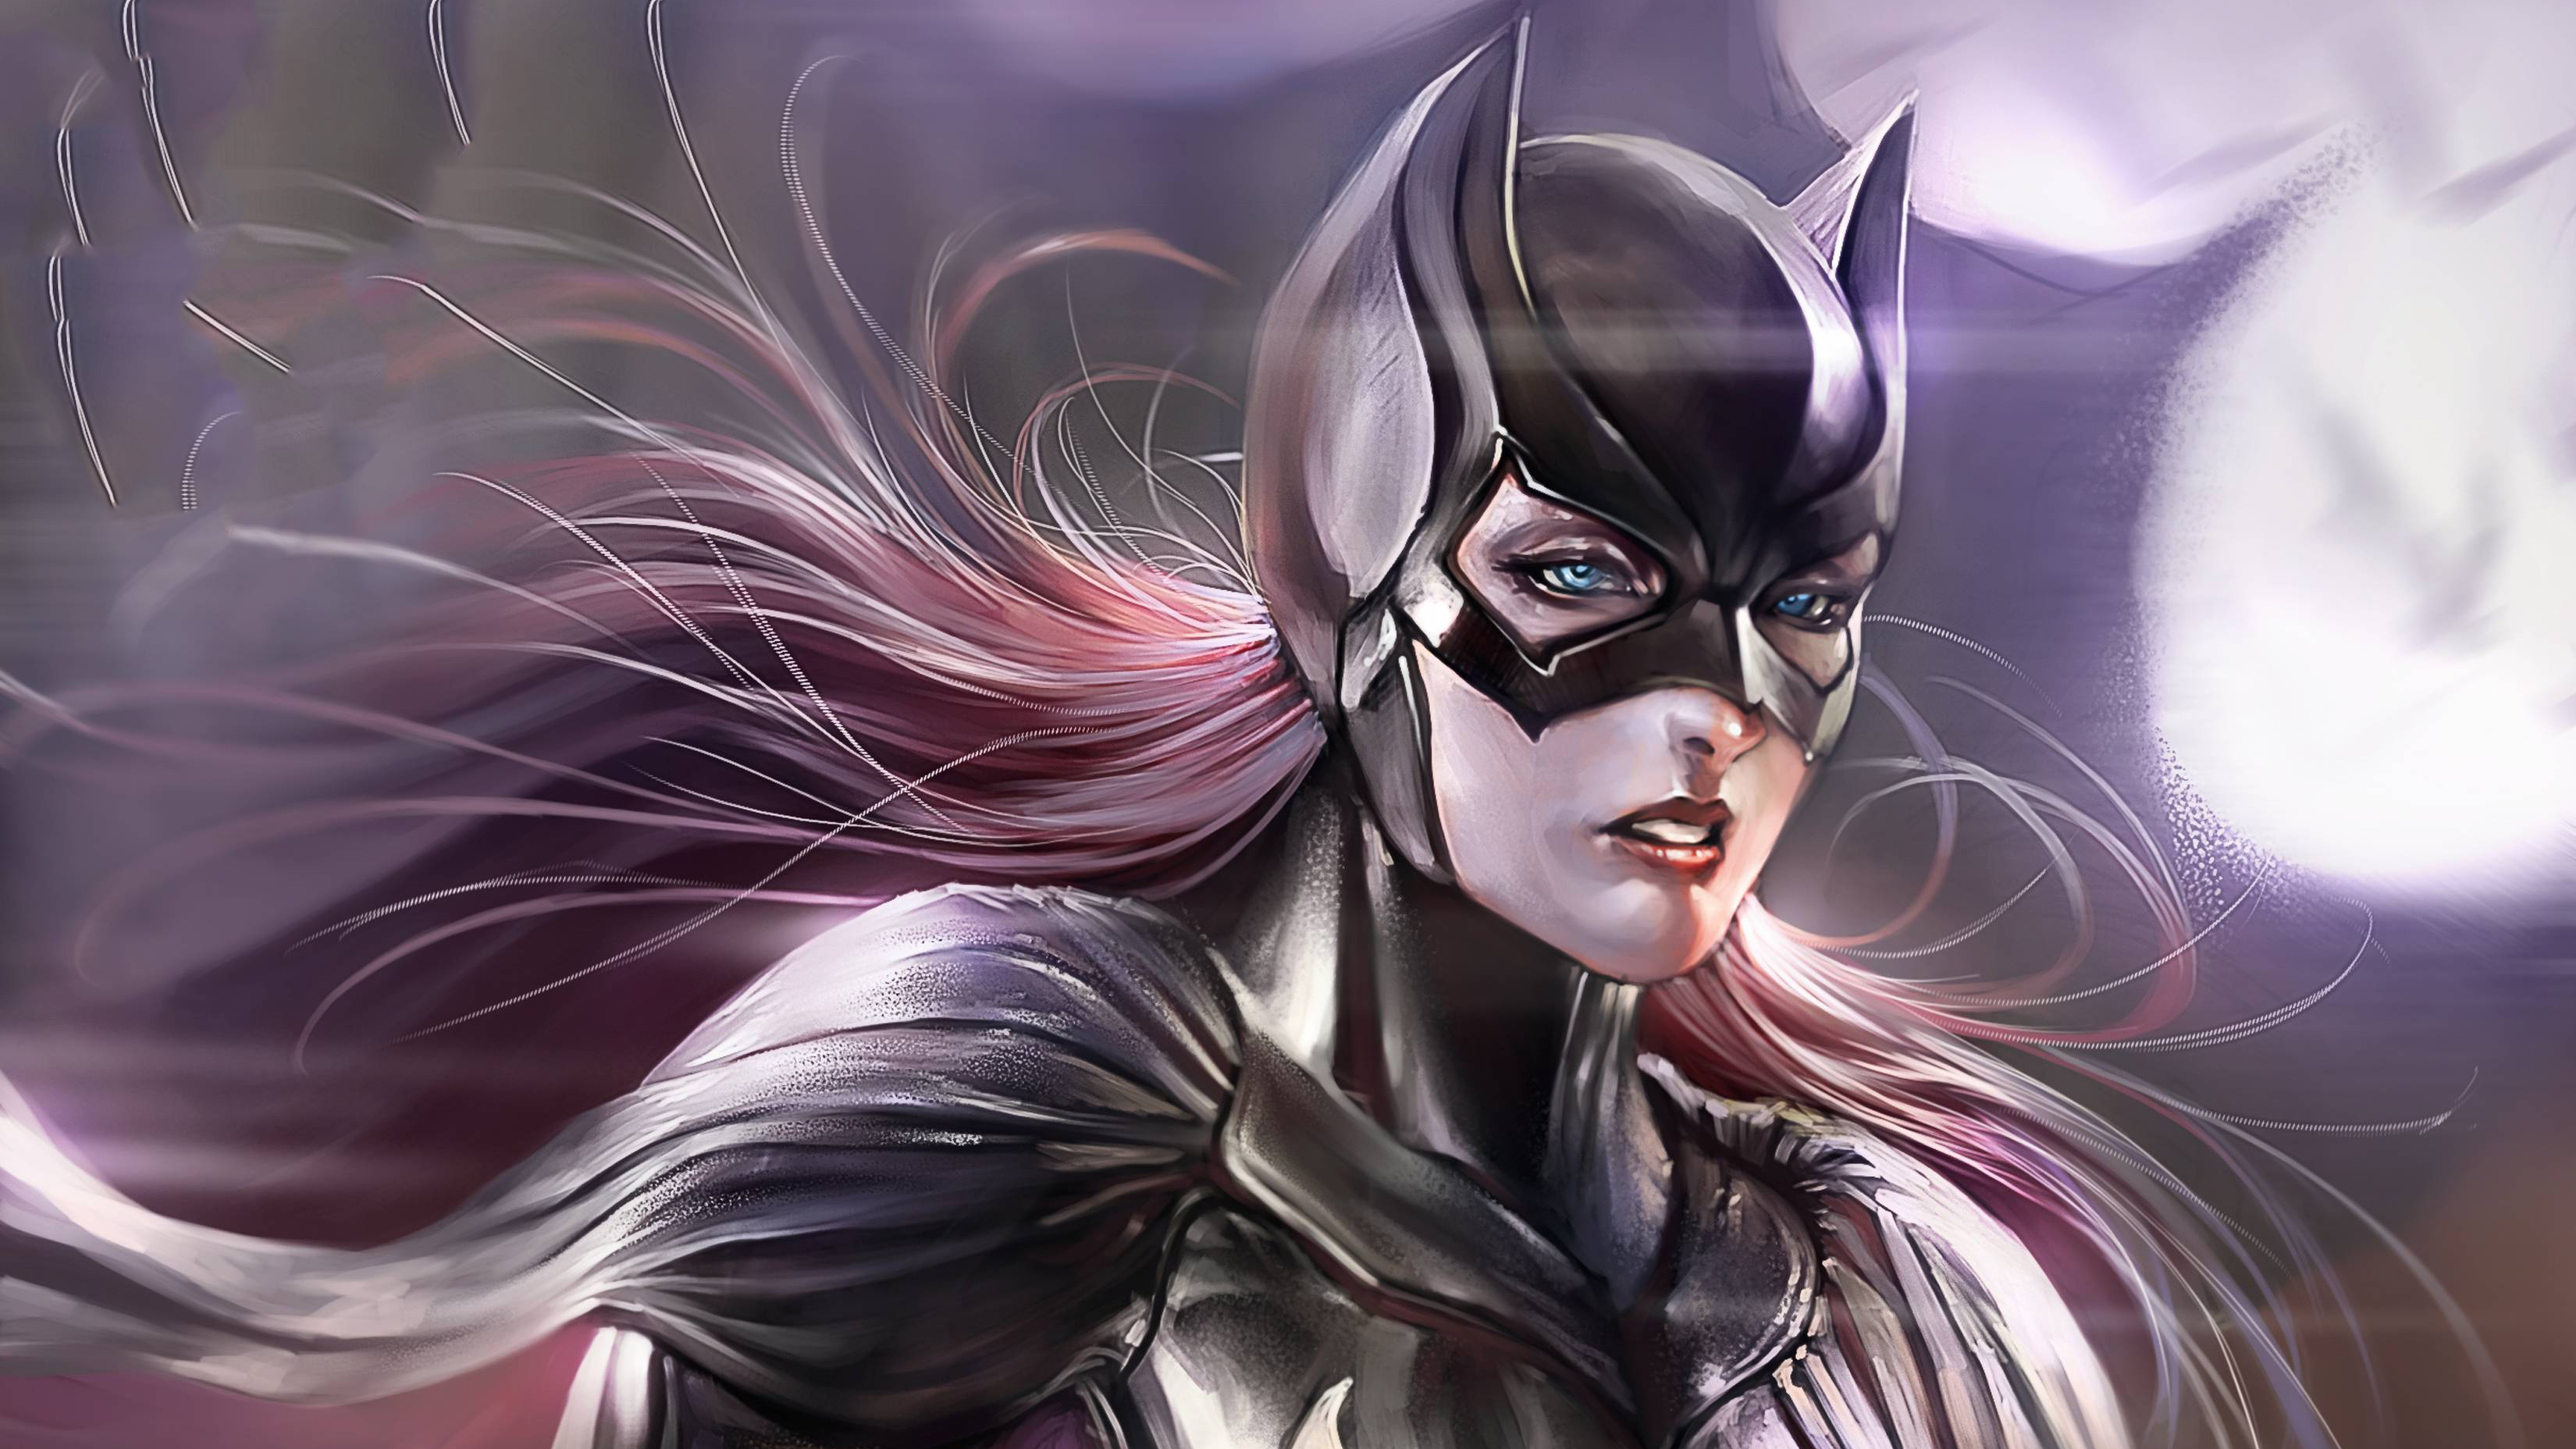 《蝙蝠少女》漫画作者称蝙蝠少女将会在未来多部DC电影中露面 - 哔哩哔哩